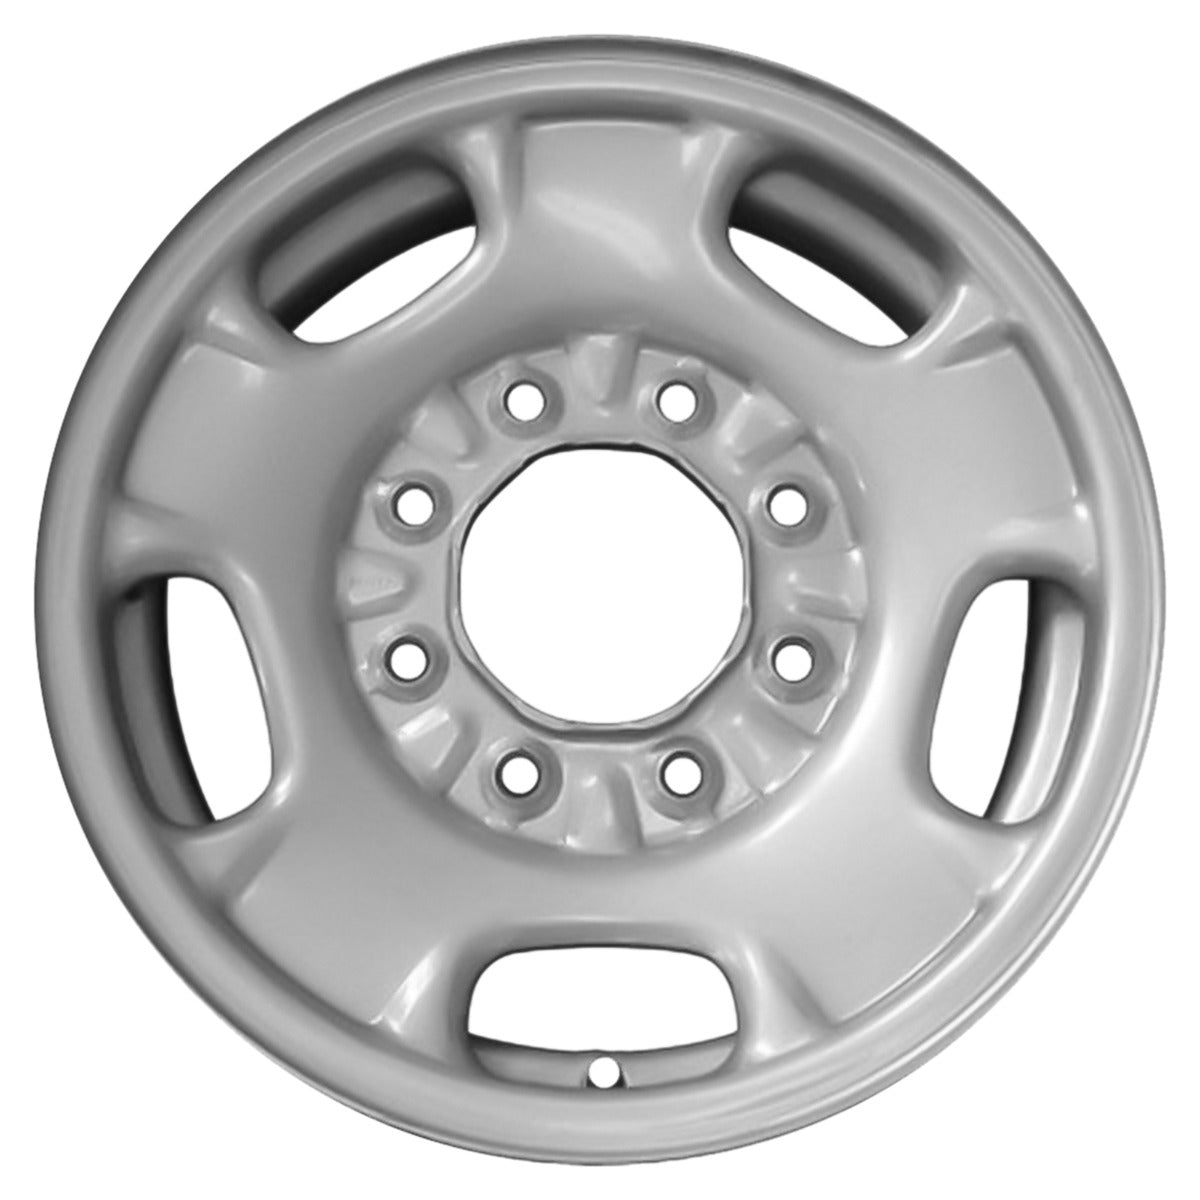 2015 GMC Sierra 2500 17" OEM Wheel Rim W8095S